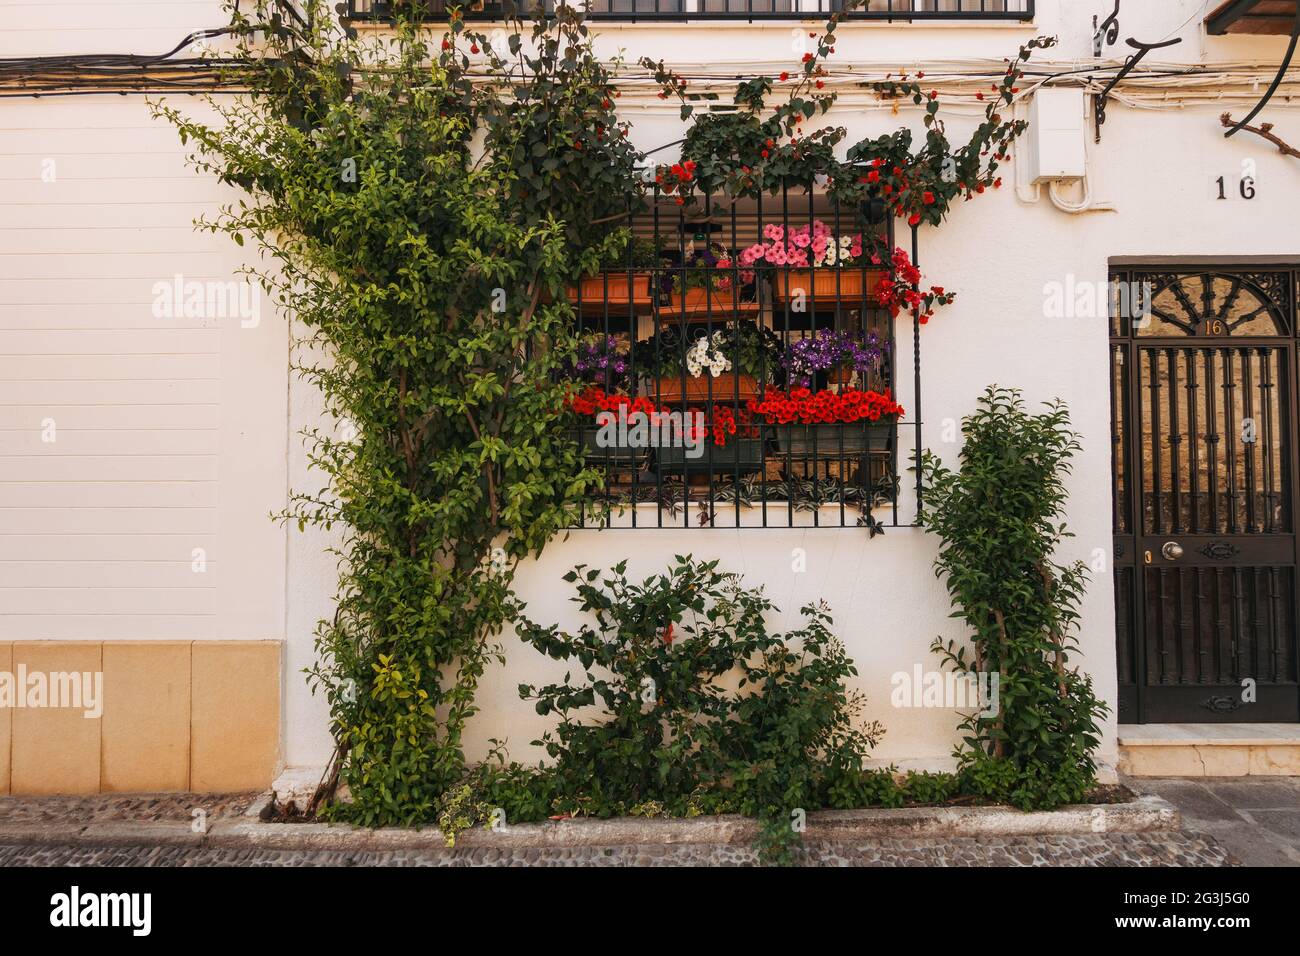 Le piante da arrampicata e i fiori in vaso decorano una finestra di casa a Córdoba, Spagna Foto Stock